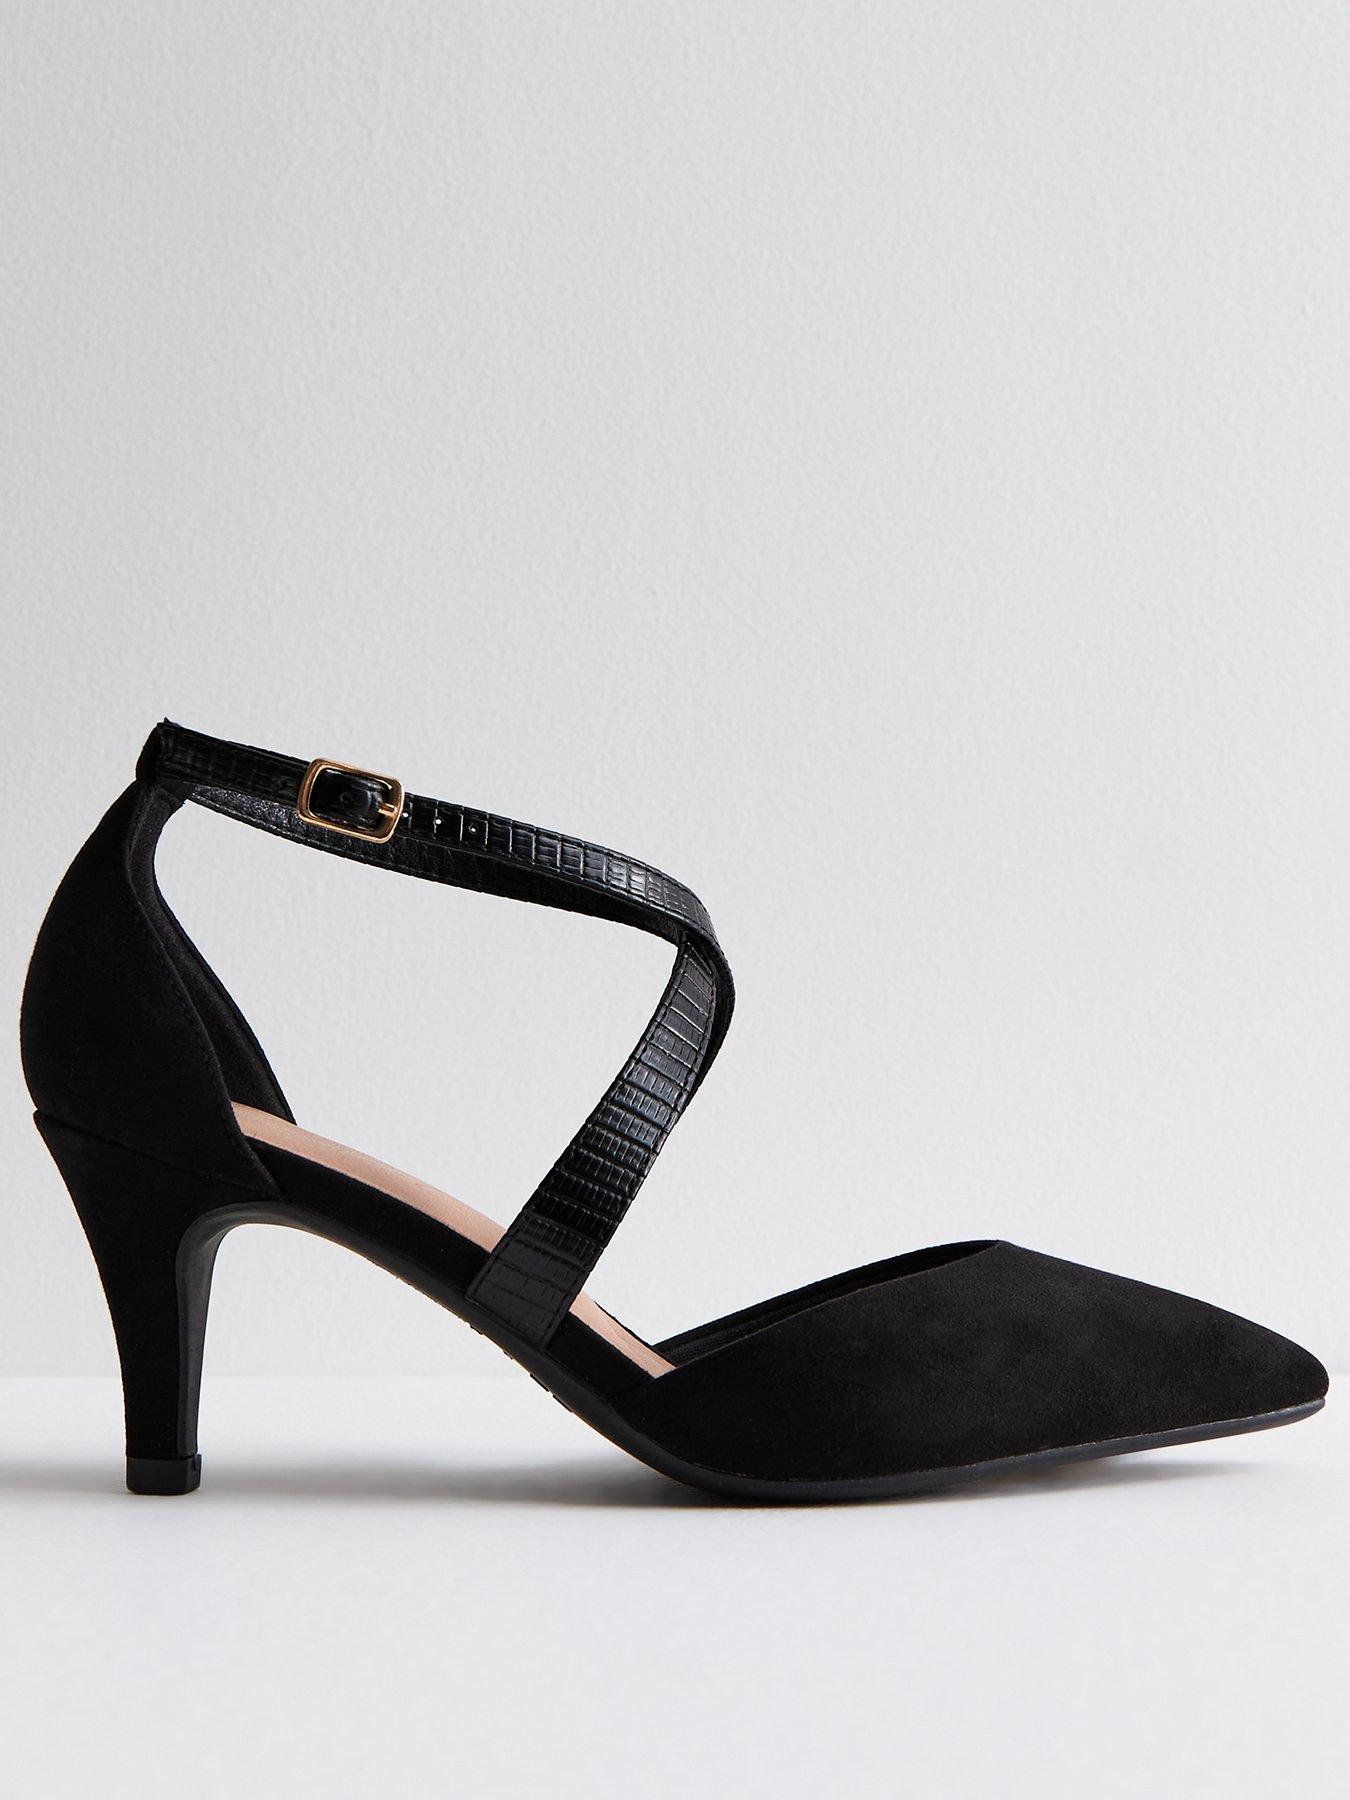 New Look black tie front platform heels shoes 7 | Platform shoes heels,  Heels, Platform heels